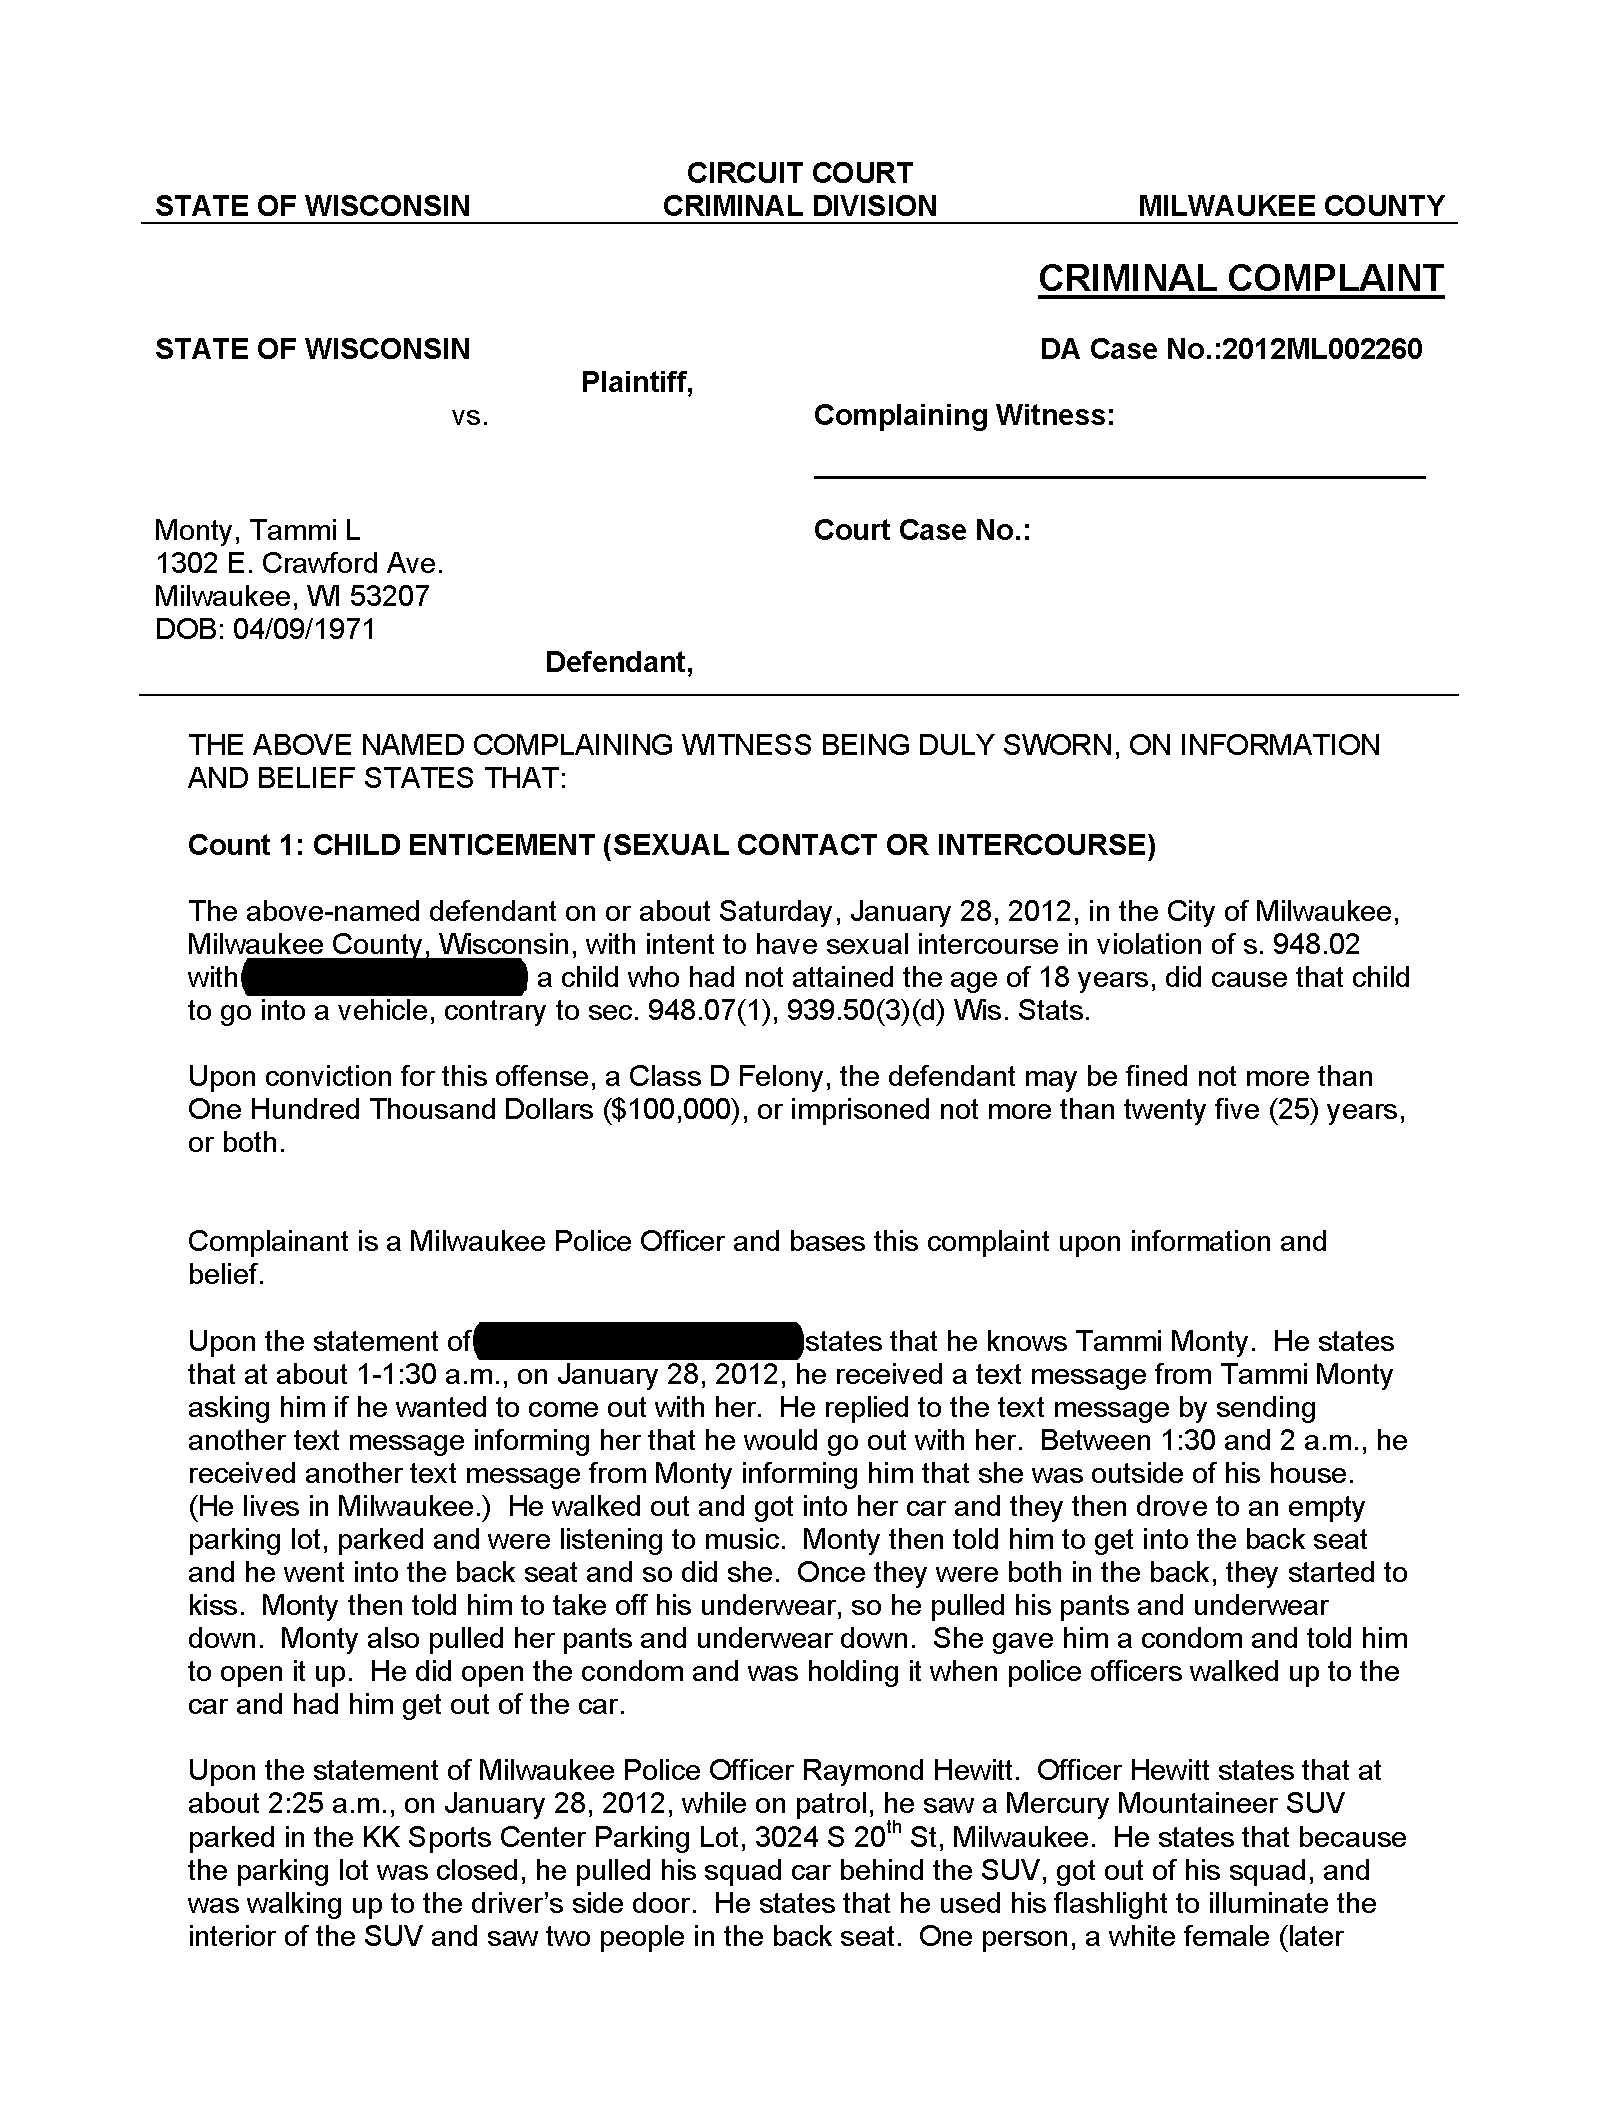 Copy of monty tammi criminal complaint1.png